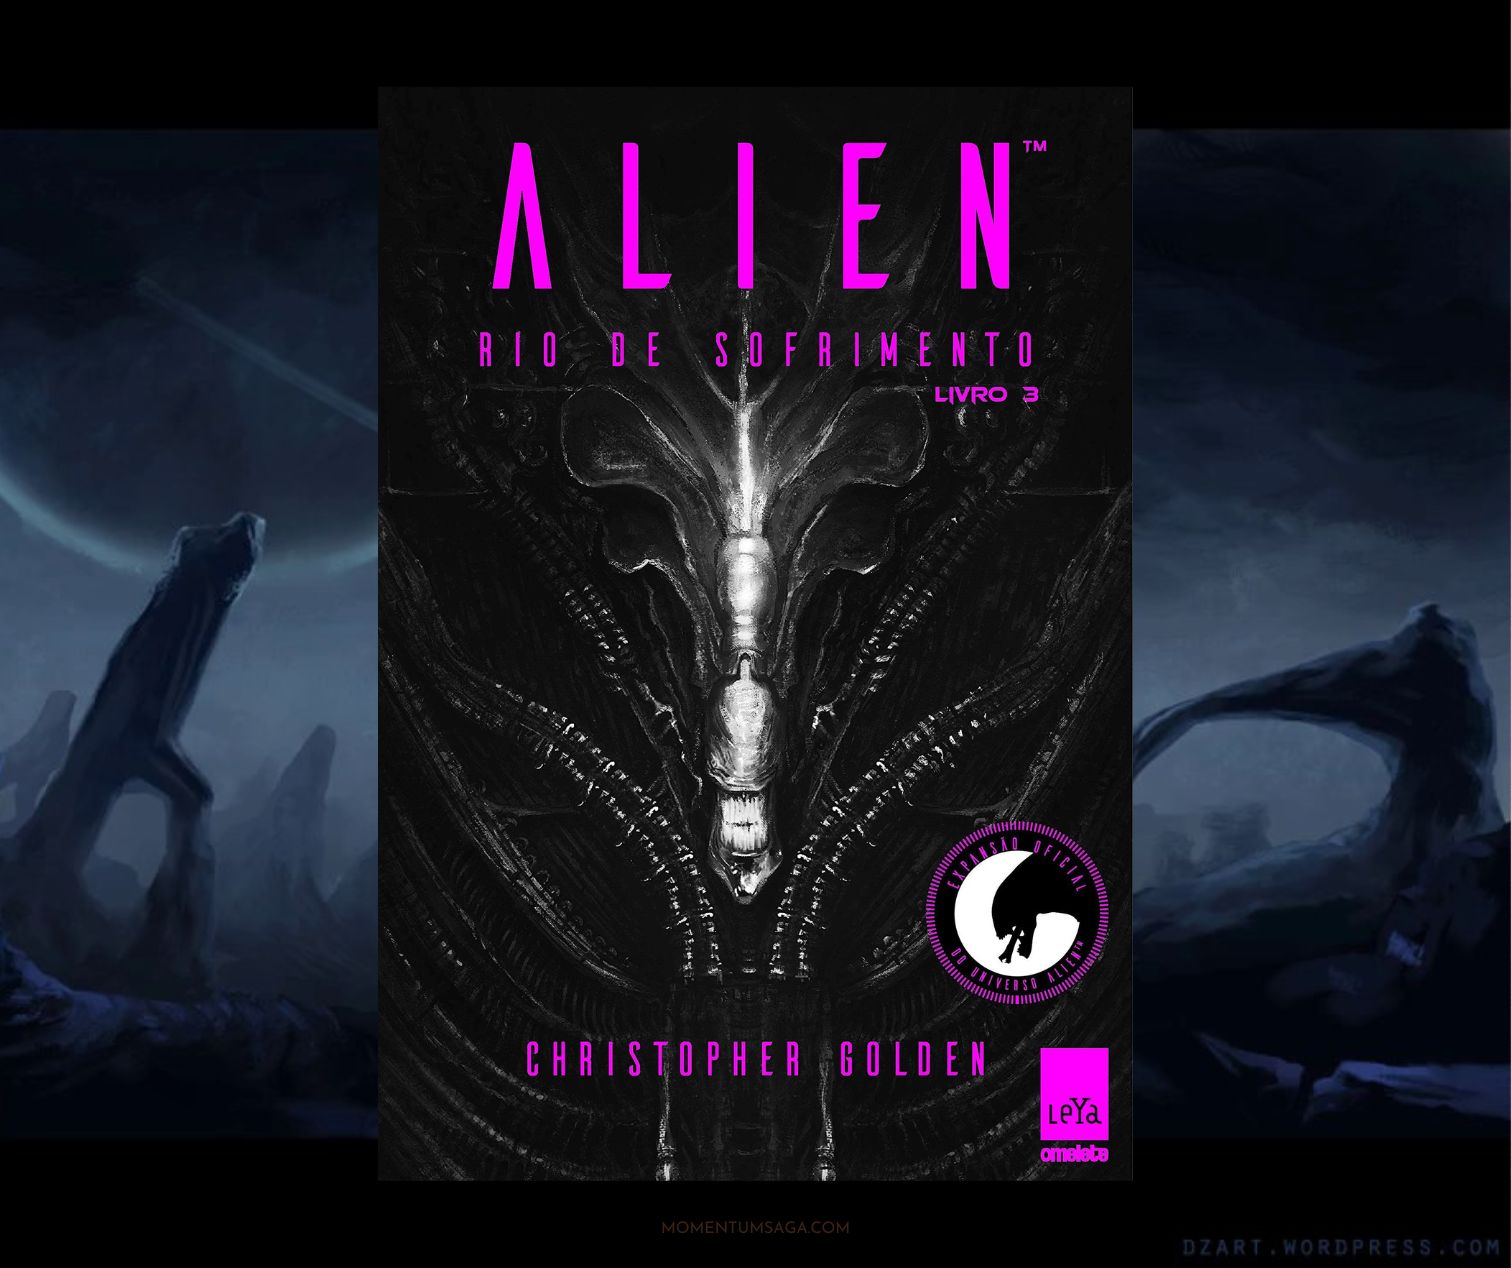 Resenha: Alien, Rio de Sofrimento, de Christopher Golden